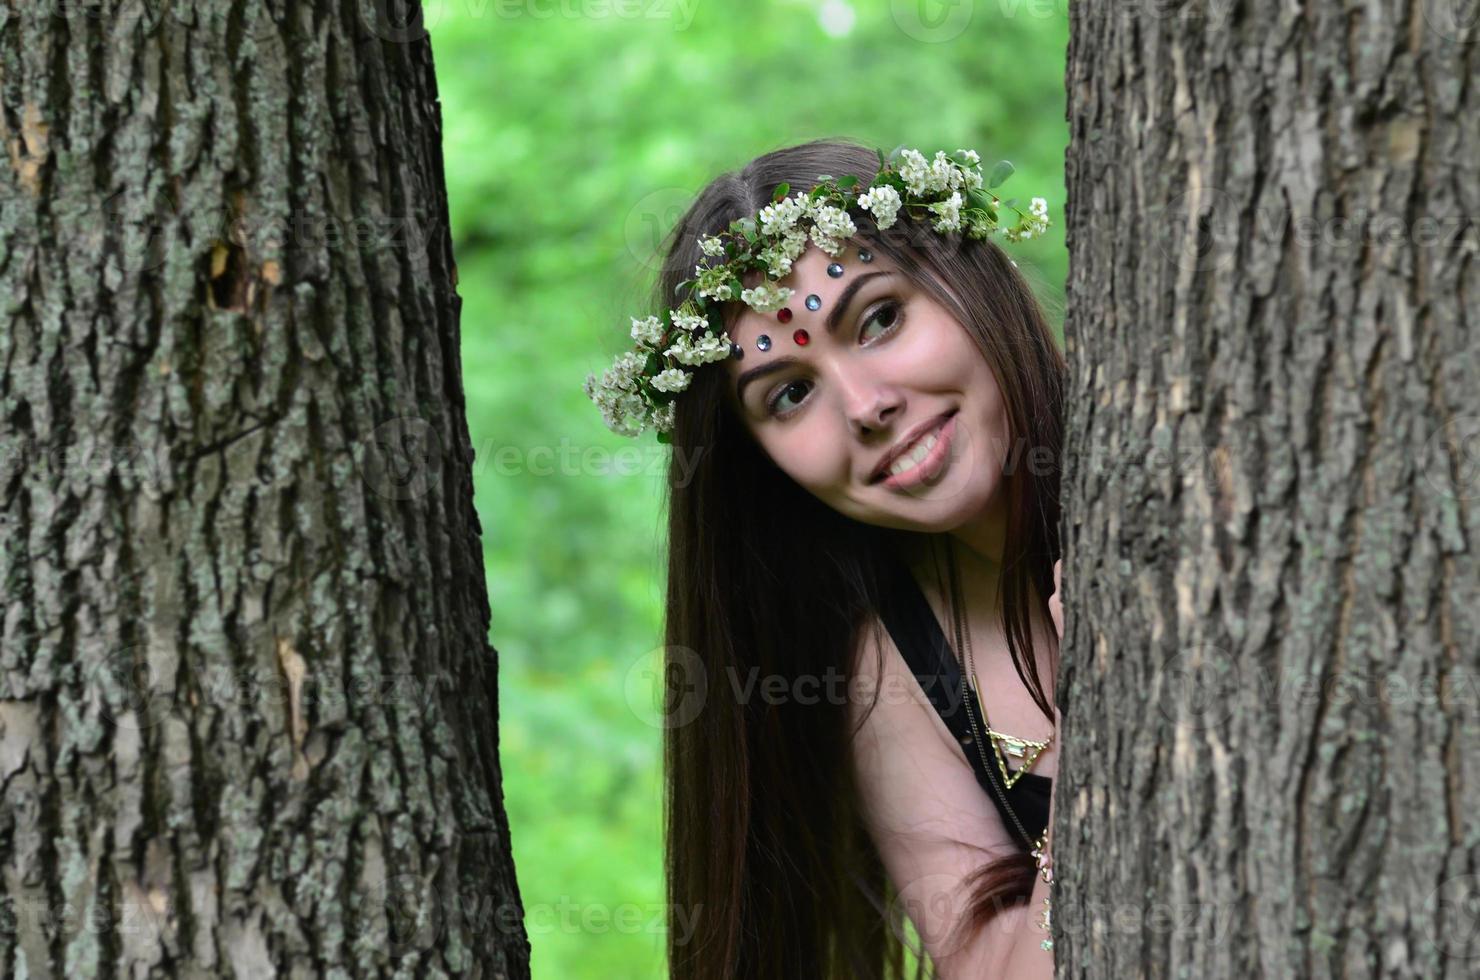 une photo de forêt d'une belle jeune brune d'apparence européenne aux yeux marron foncé et aux grandes lèvres. sur la tête de la jeune fille porte une couronne de fleurs, sur son front des décorations brillantes